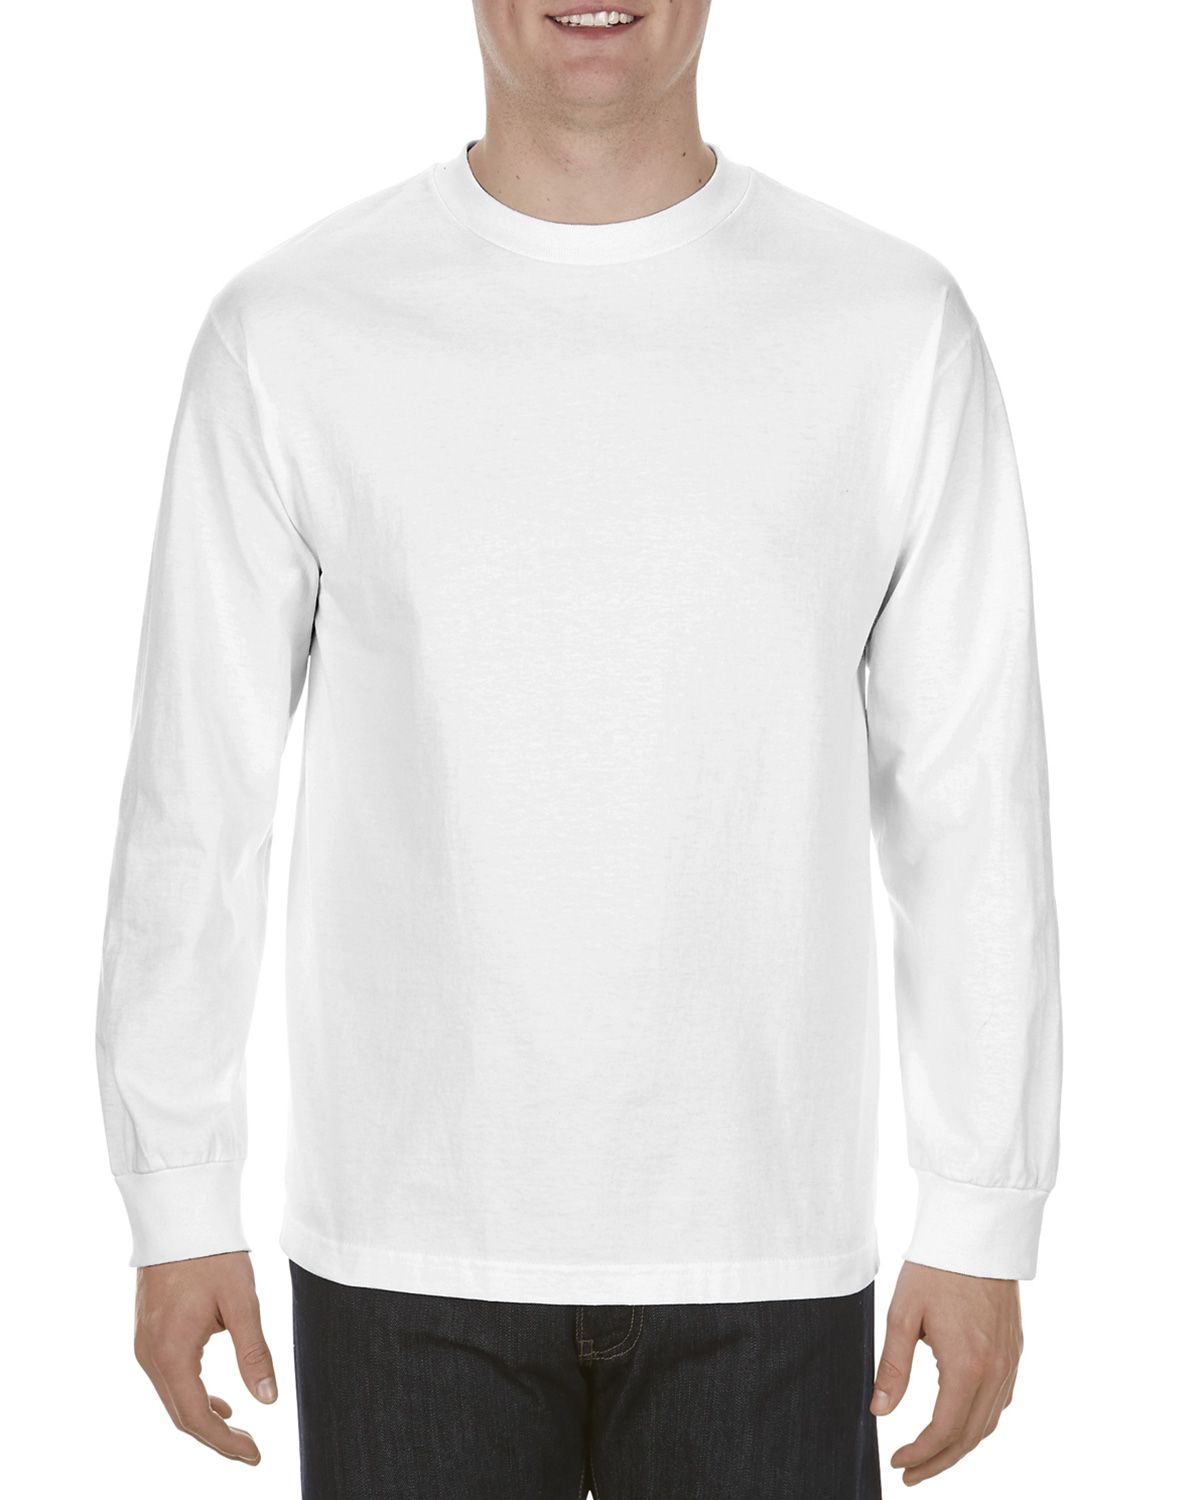 Alstyle AL1304 Men's 6.0 oz. 100% Cotton Long-Sleeve T-Shirt